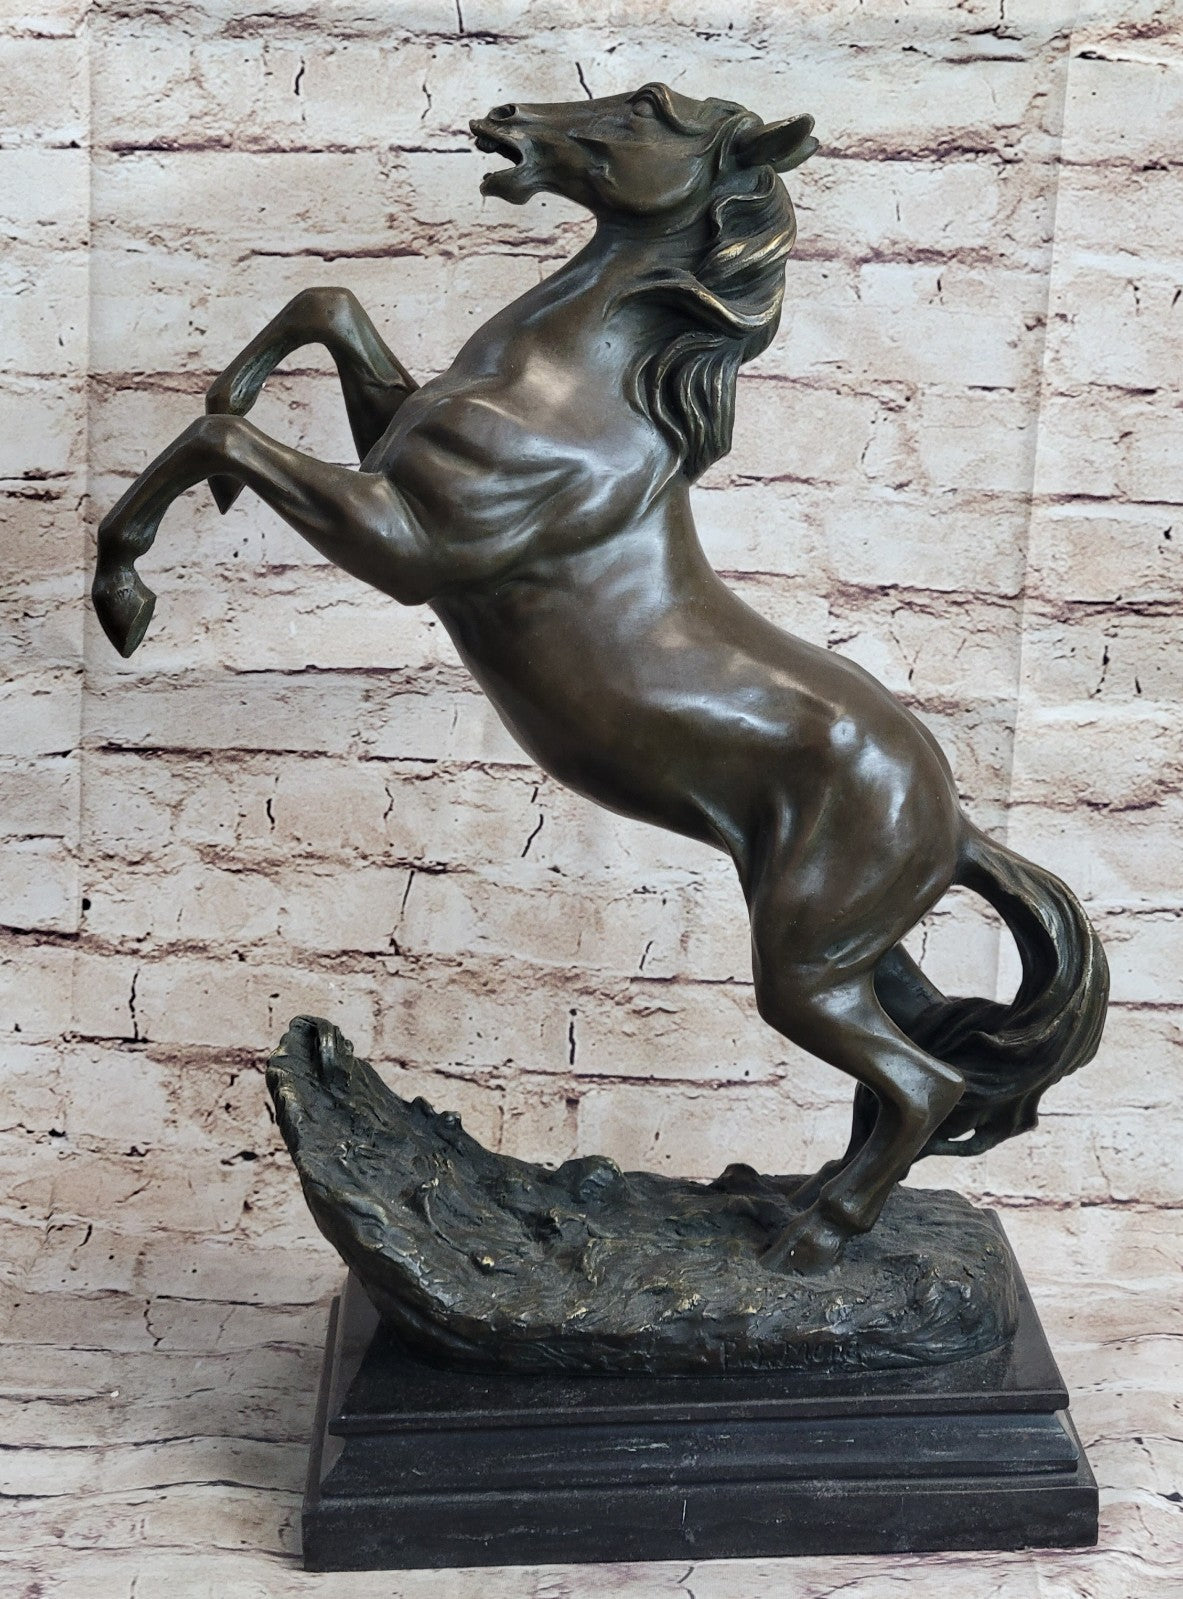 Artistic Tribute: Handmade Bronze Sculpture of Rearing Horse Stallion by P.J Mene